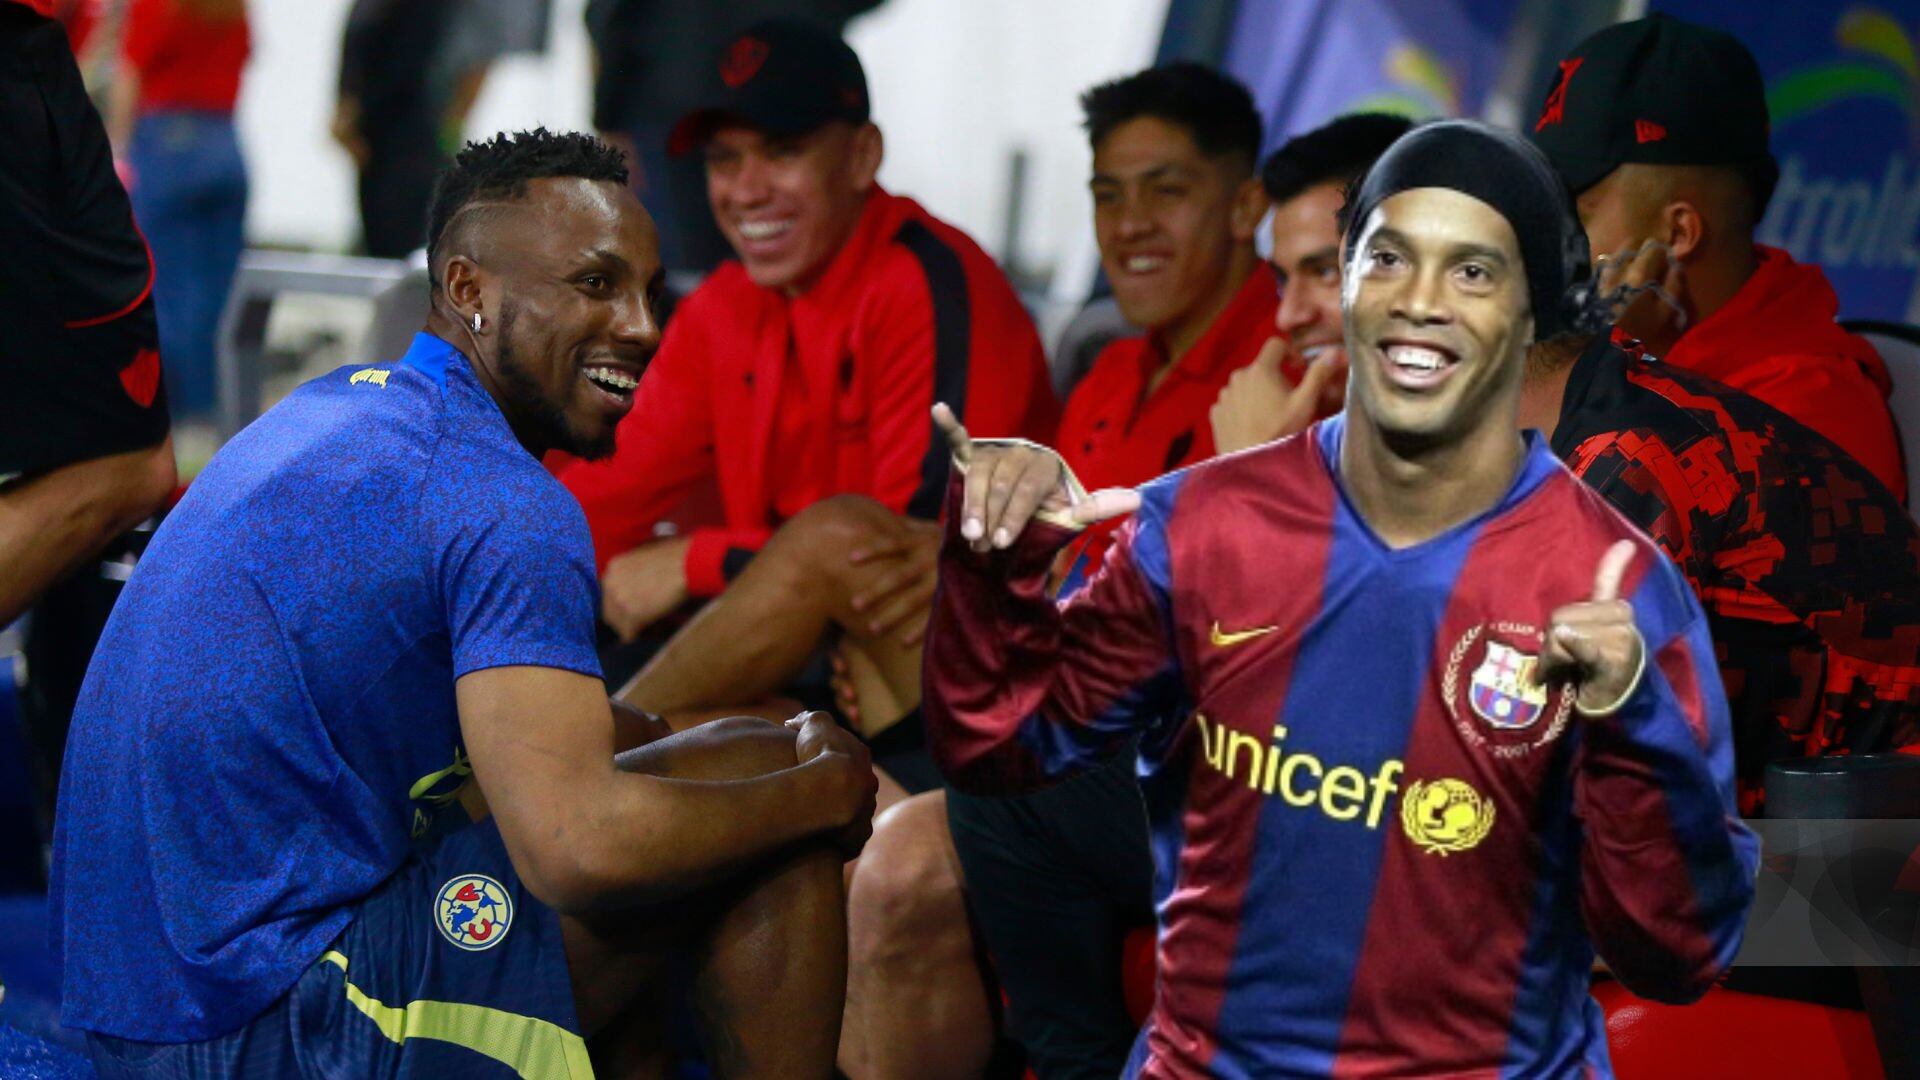 Ni a Ronaldinho en el Bernabéu, lo que hicieron los aficionados de Atlas tras el gol de Quiñones